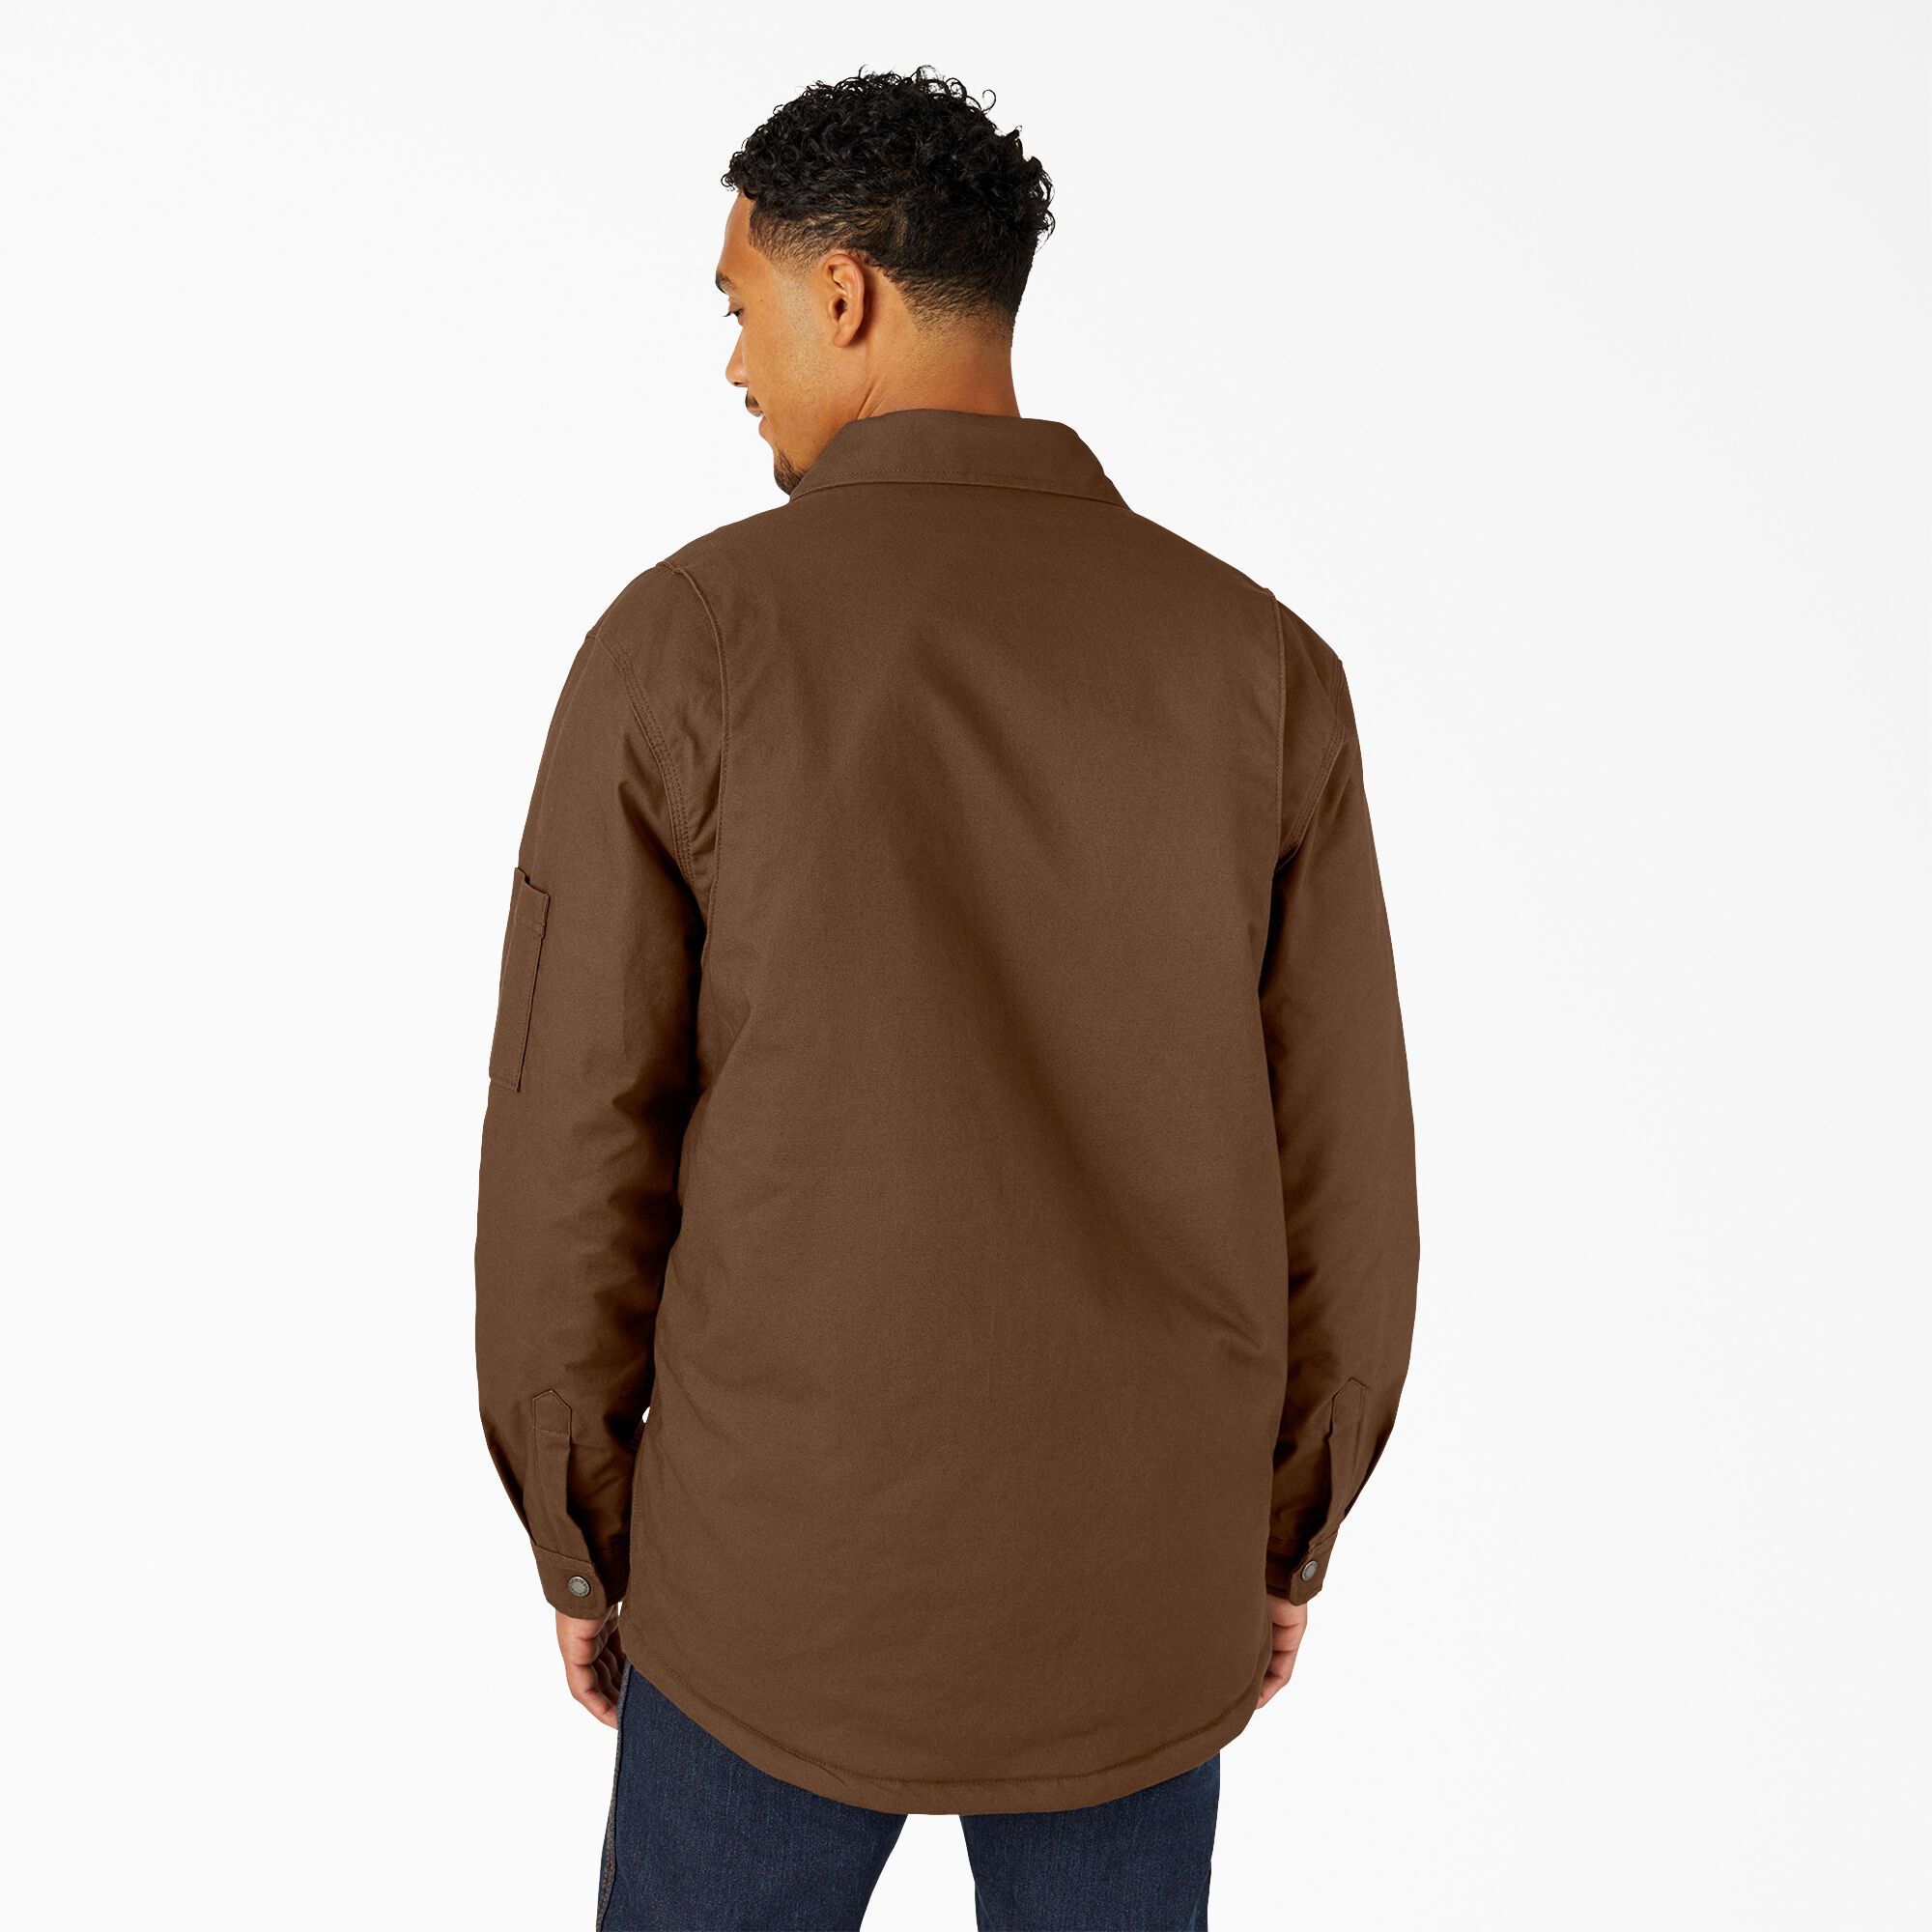 FLEX Duck Shirt Jacket with DWR | Men's Shirt Jackets, Shackets